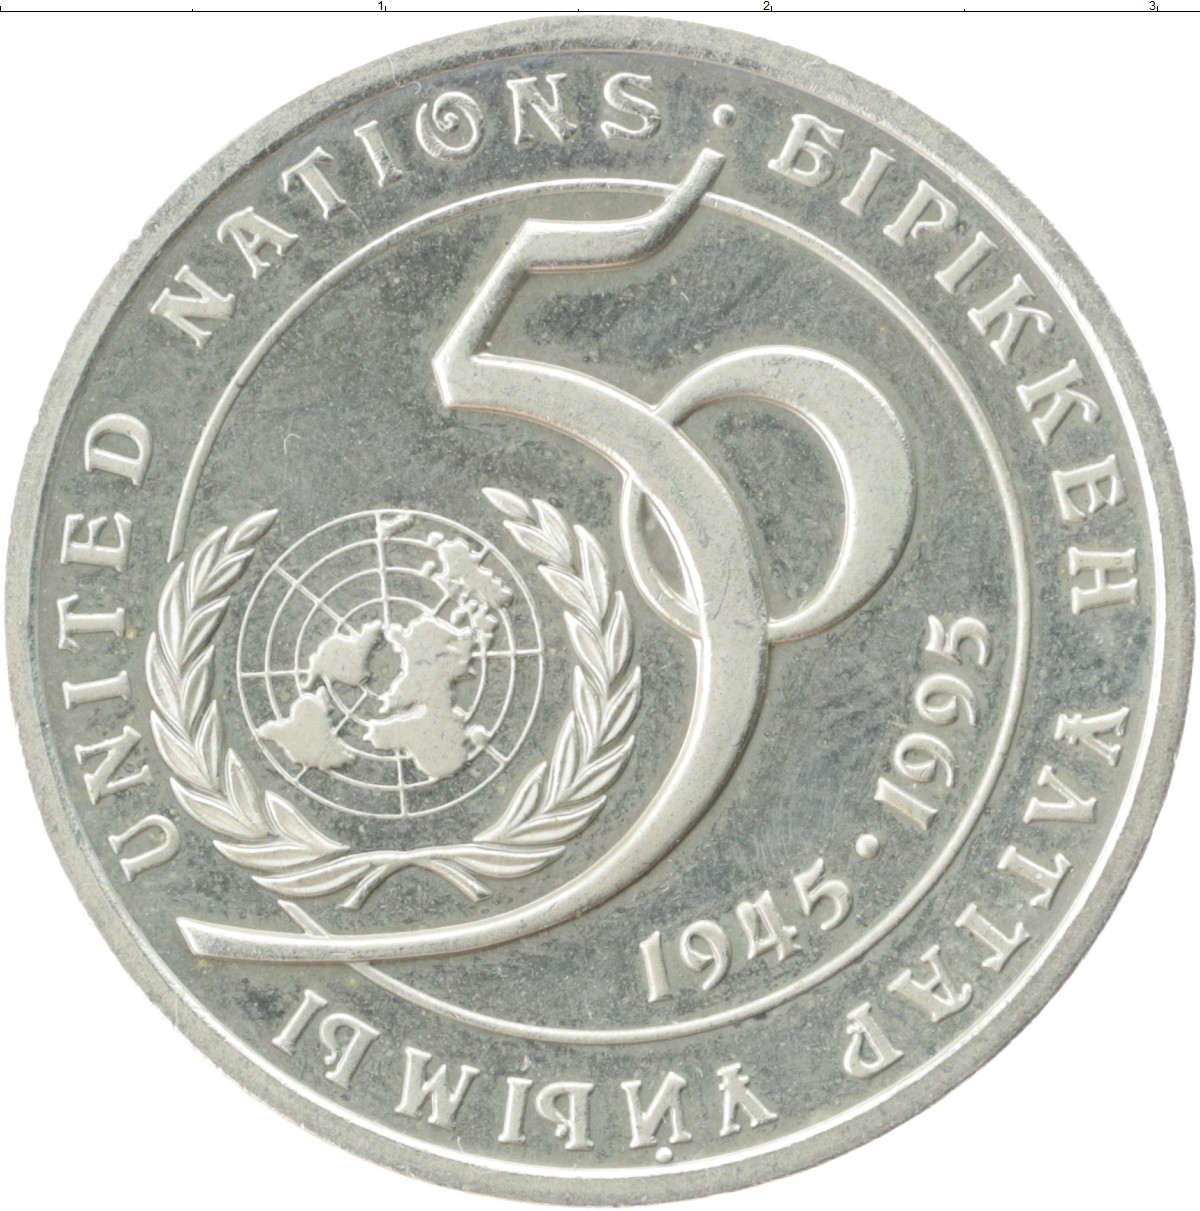 5 220 в рублях. 20 Тенге 1995 года Казахстан 50 лет ООН. Монета 20 тенге 5 лет независимости. 20 Тенге монета. Монеты Казахстана 1995 год.